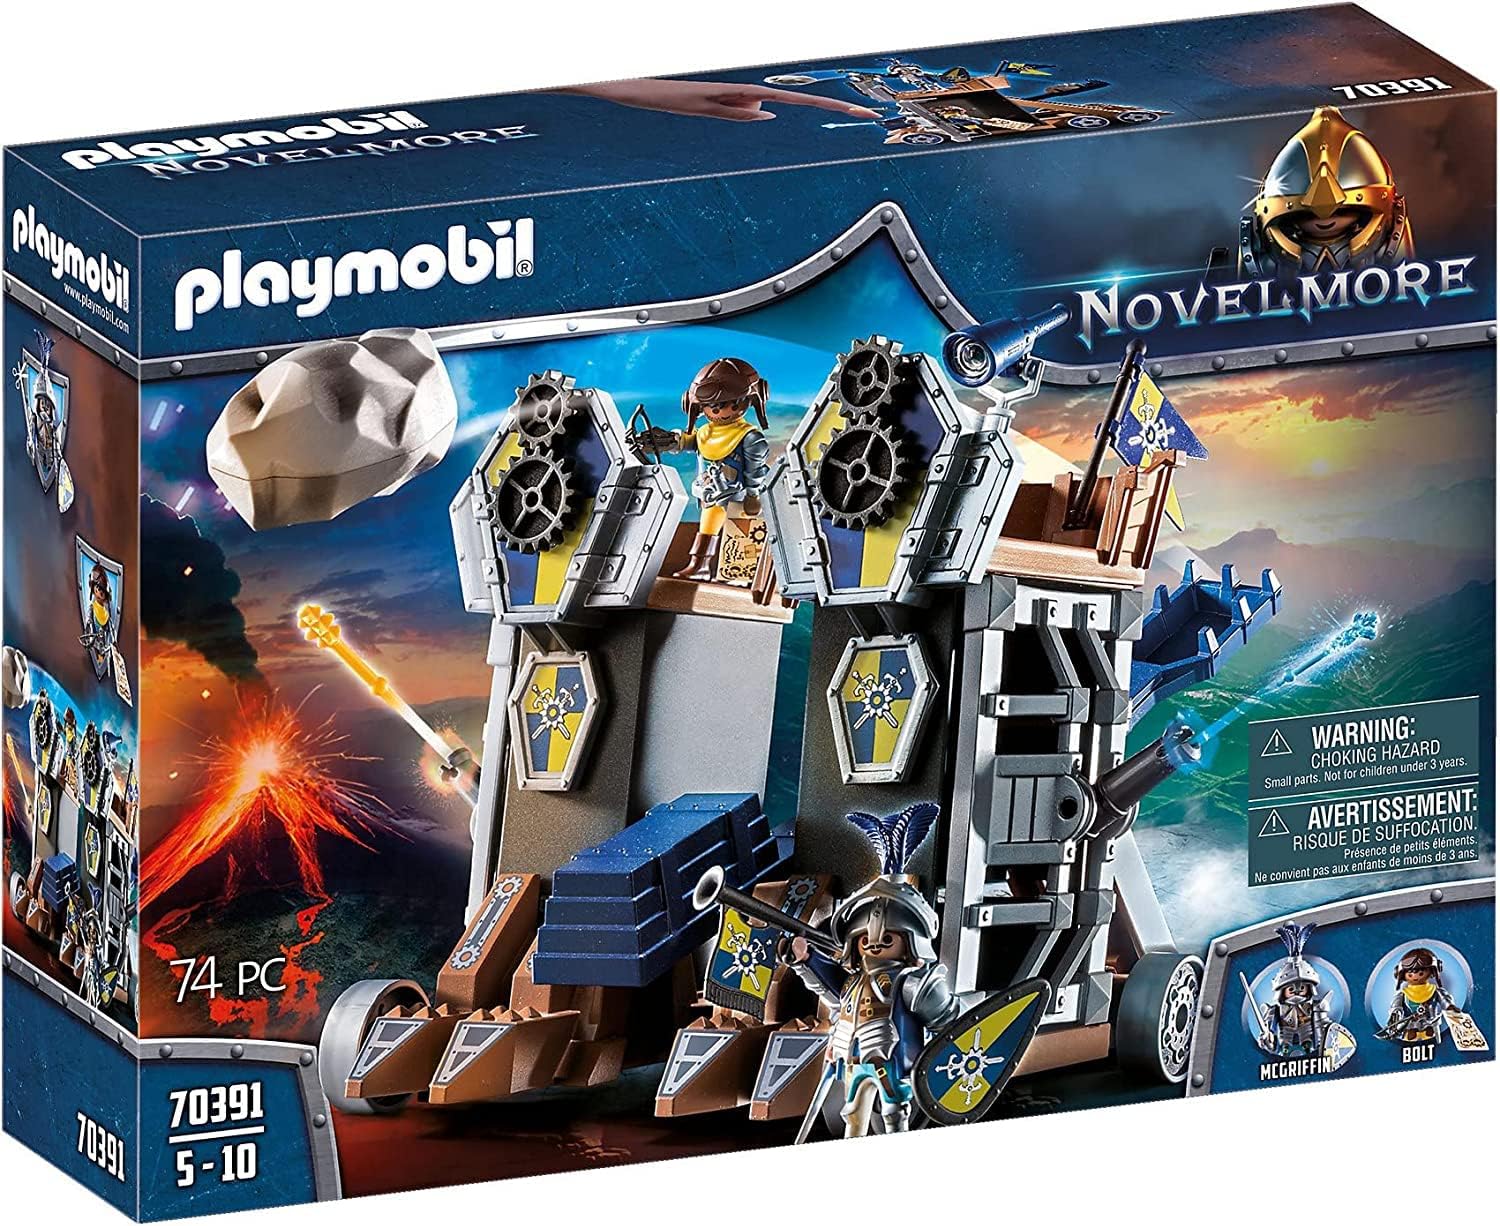 Playmobil Novelmore Mobilna Katapulta 70391